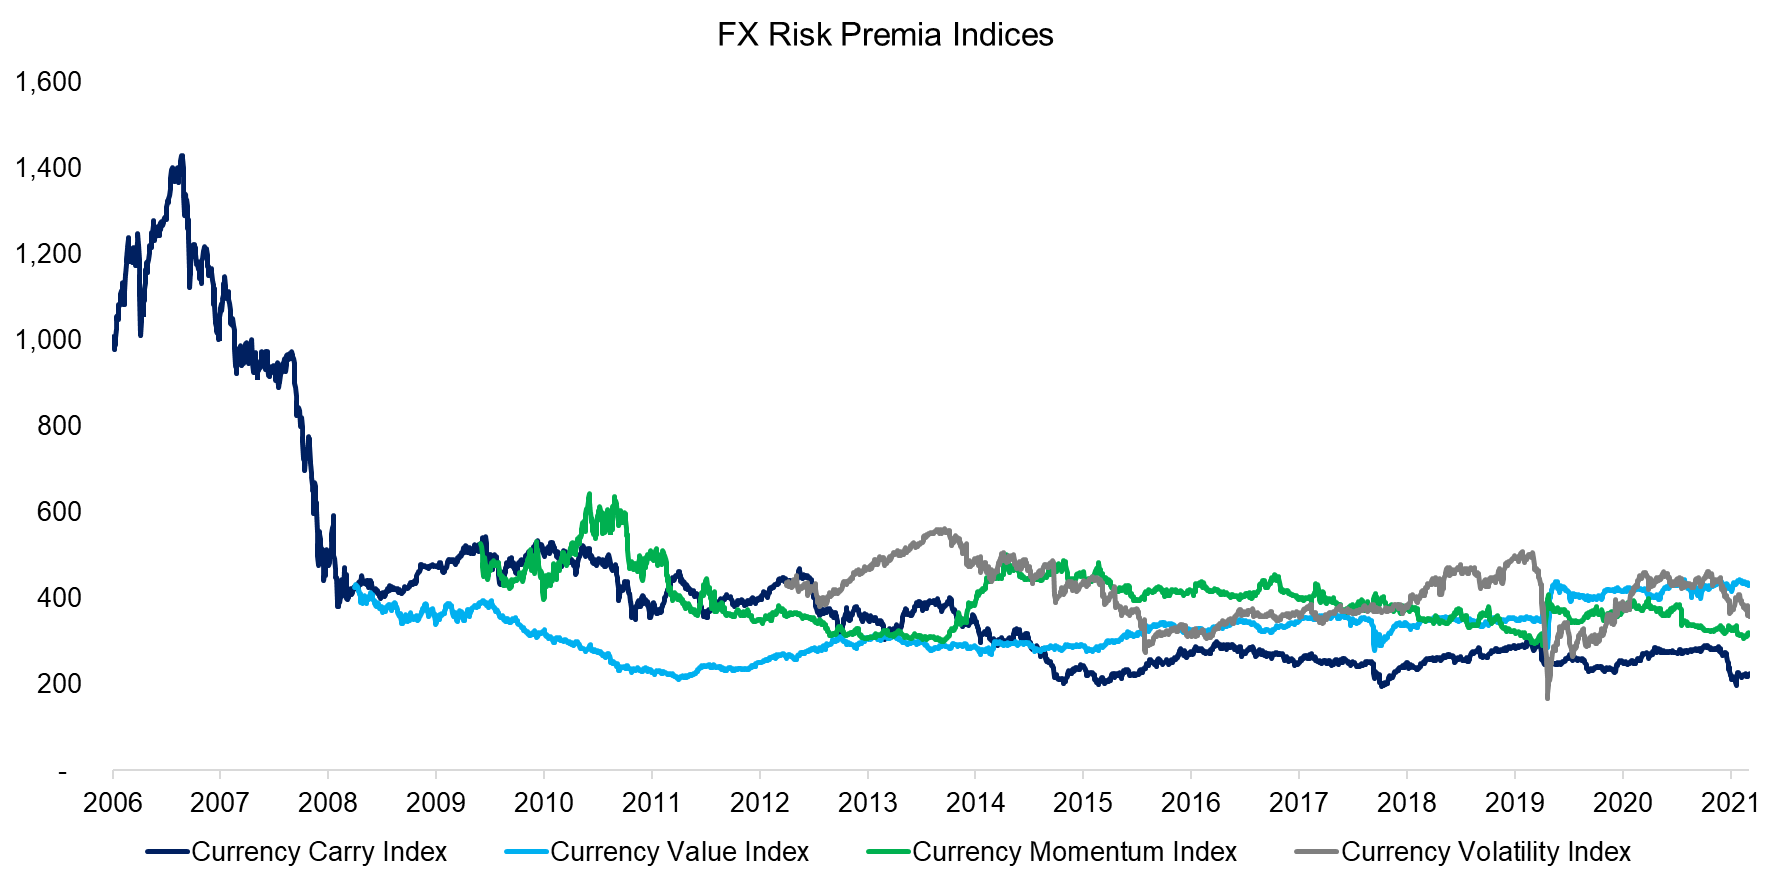 FX Risk Premia Indices